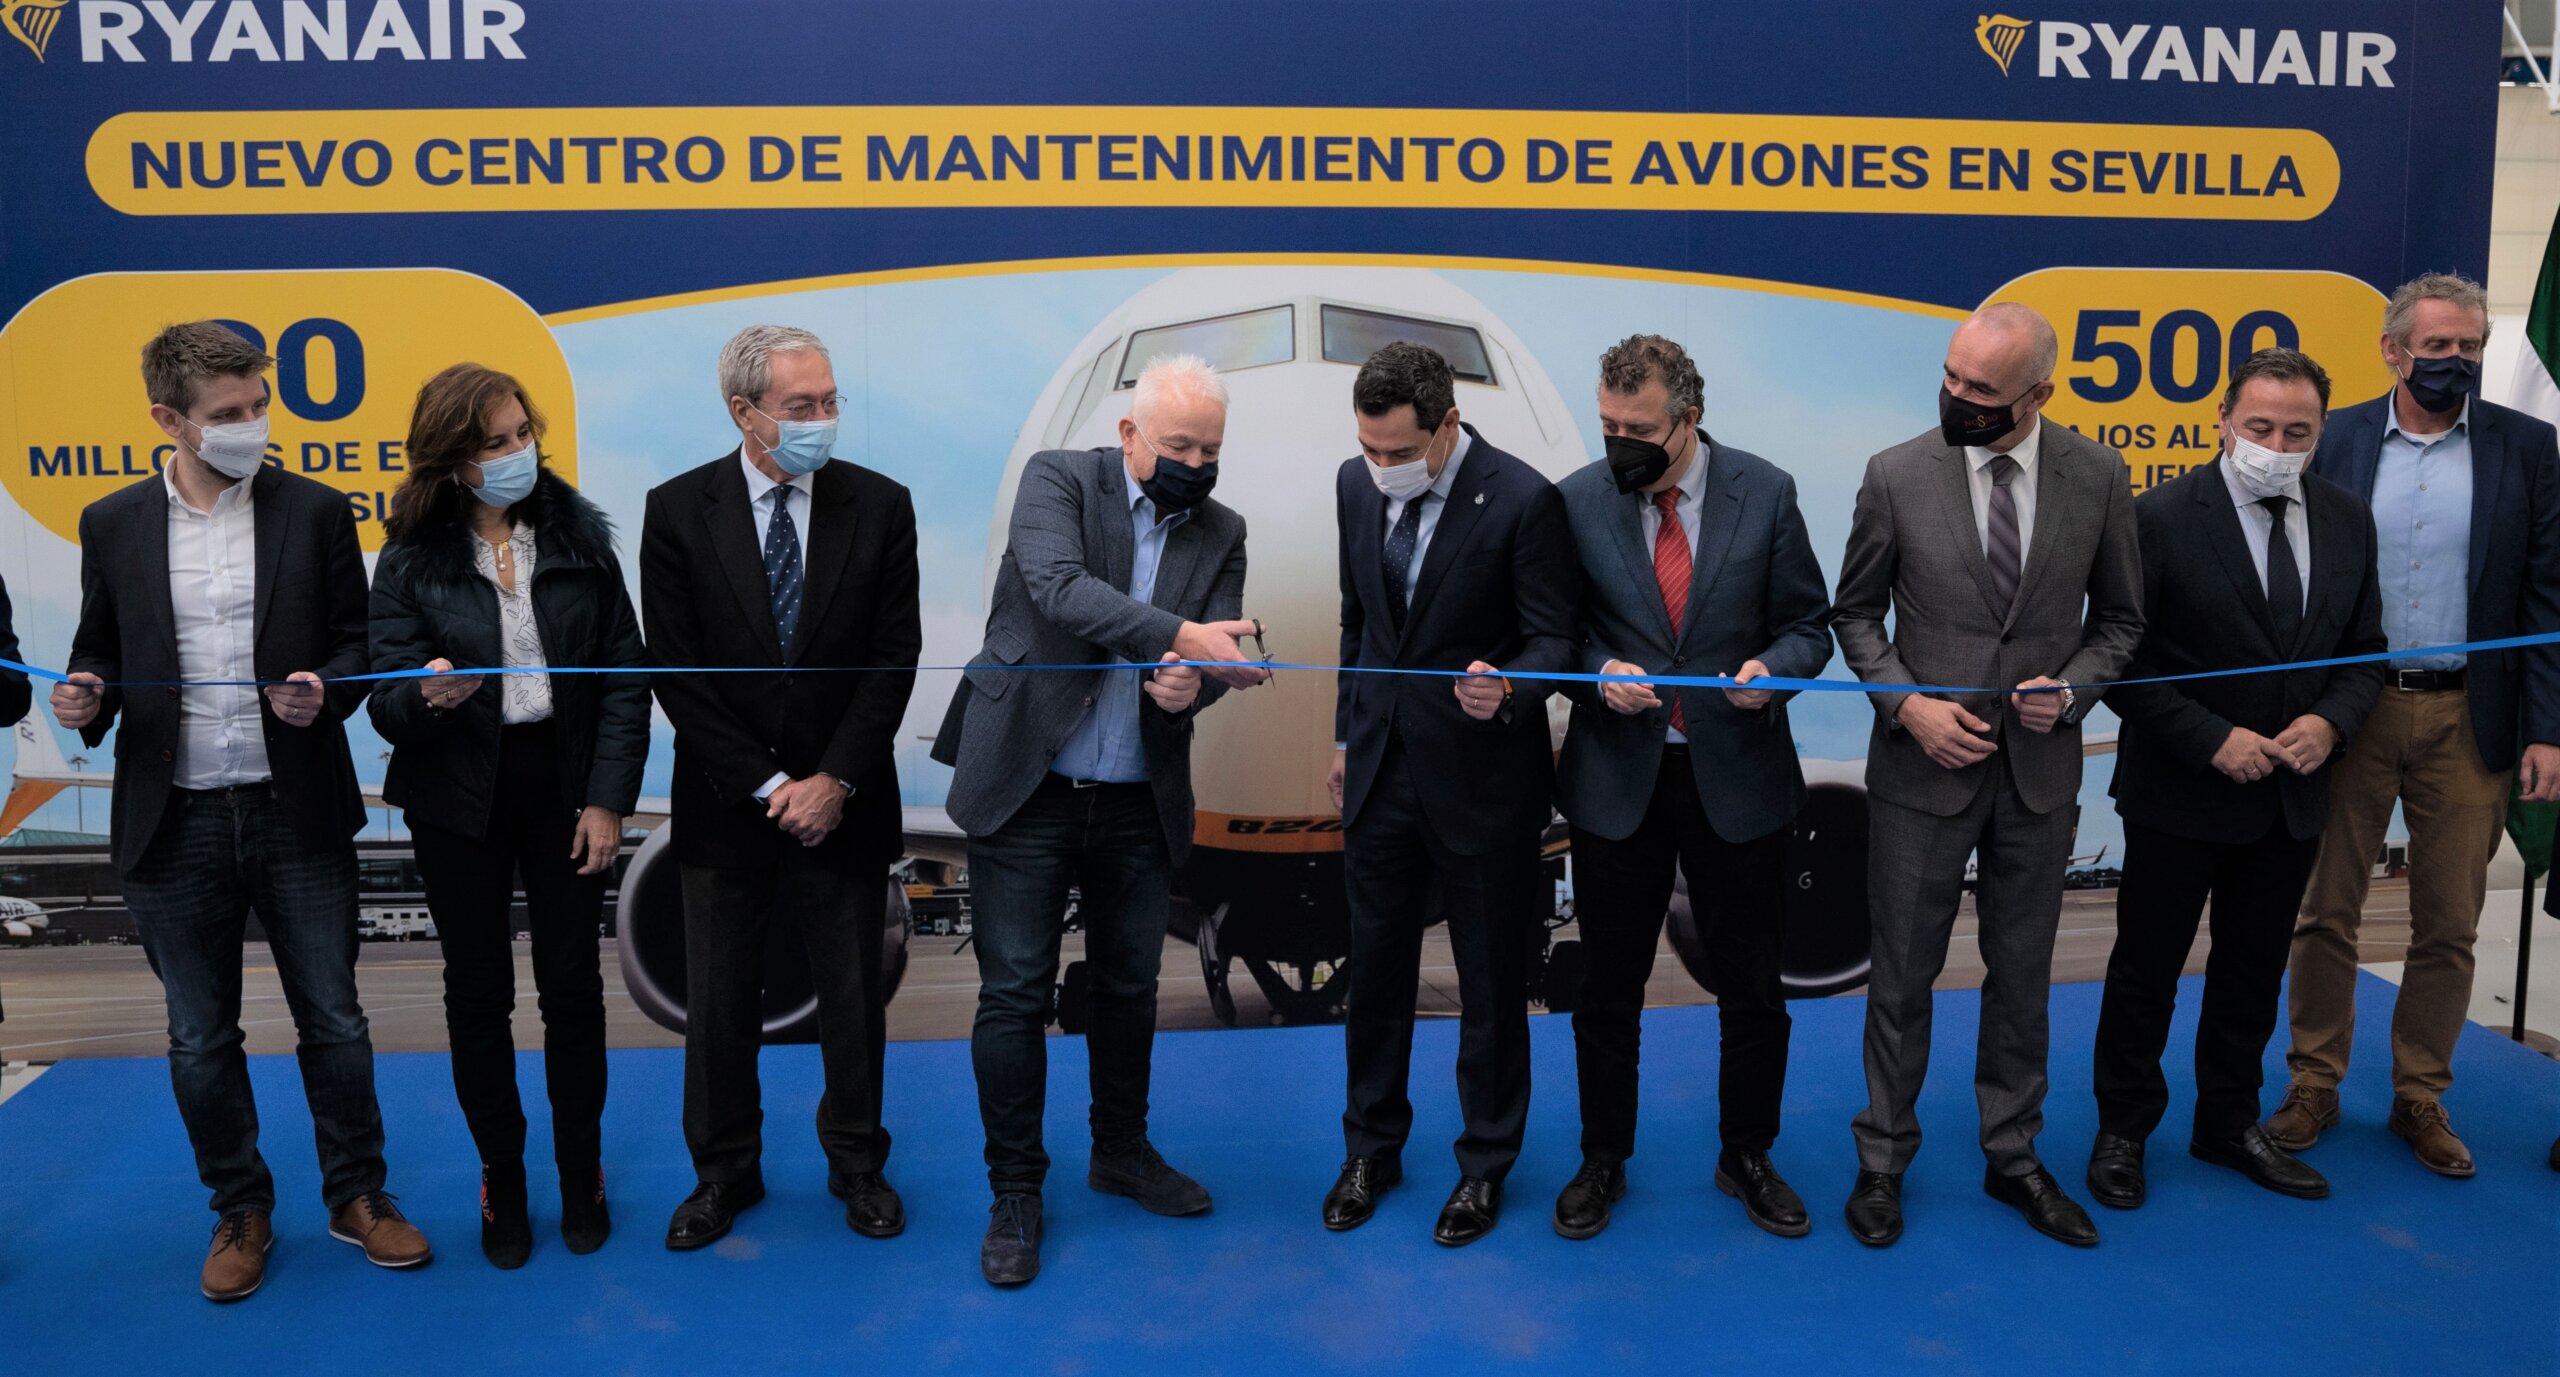 Ryanair Åbner Ny Luftfartøjs-Vedligeholdelsesfacilitet I Seville